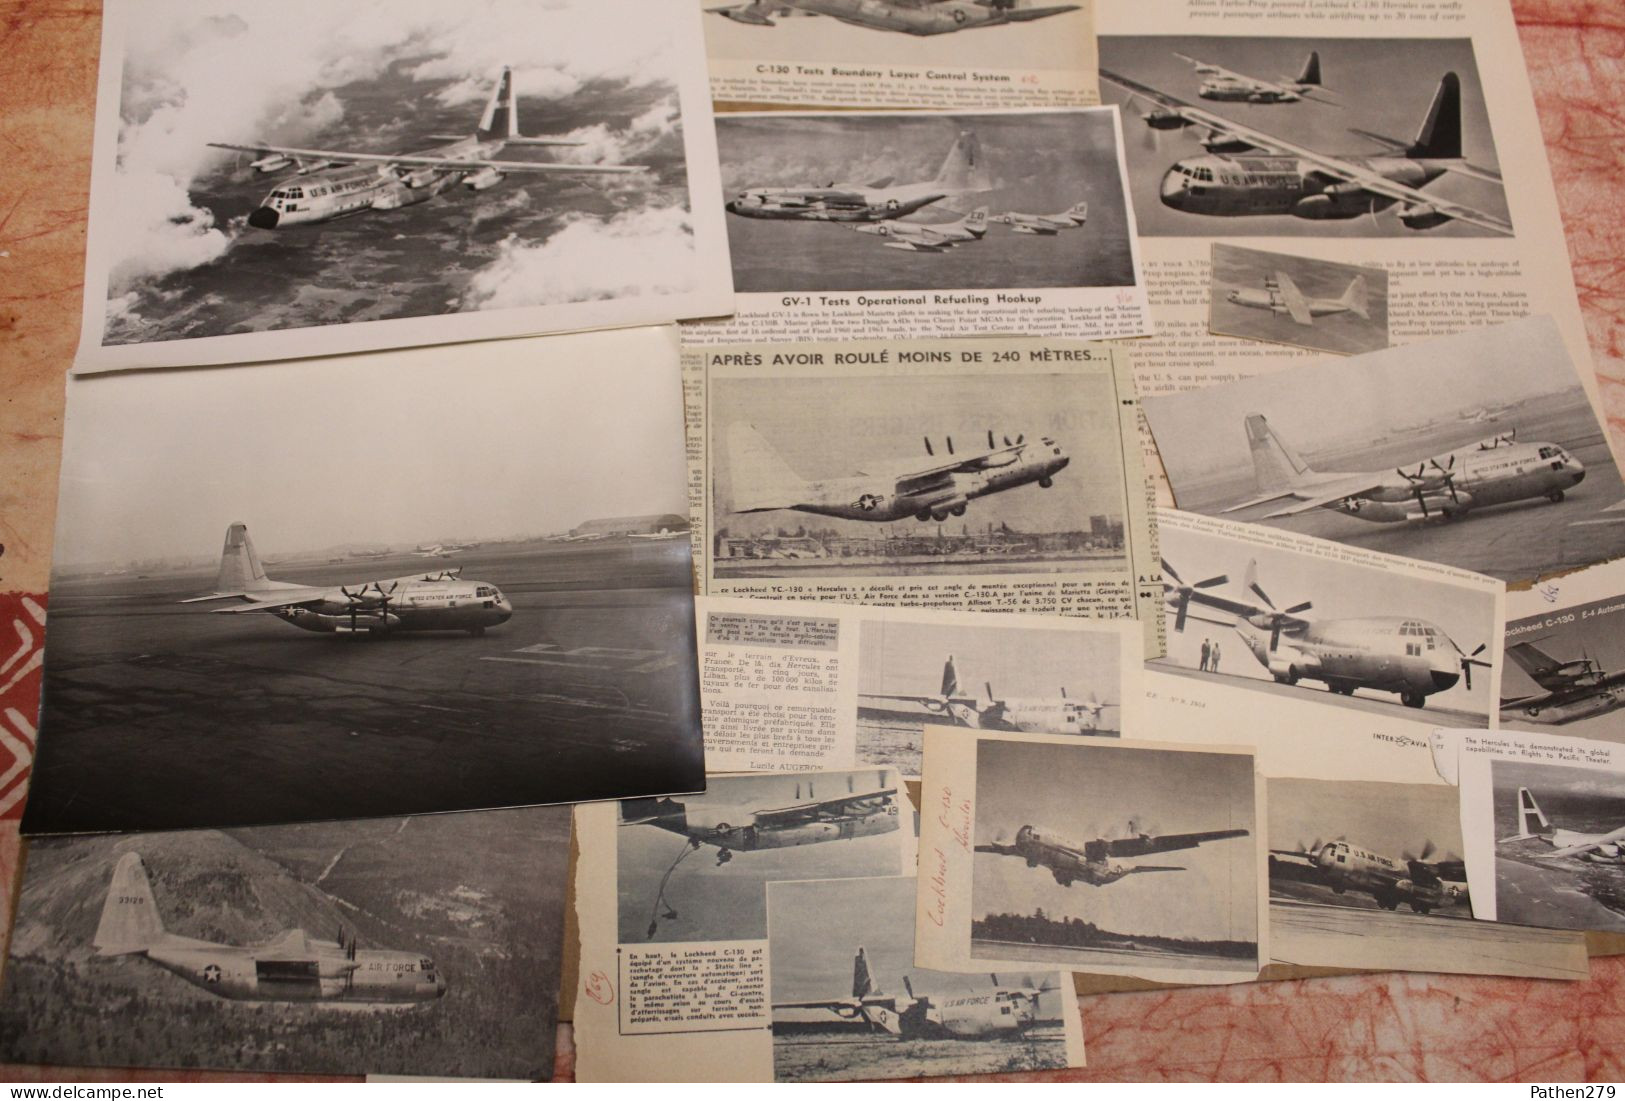 Lot de 679g d'anciennes coupures de presse et photos de l'aéronef américain Lockheed C-130 "Hercules"